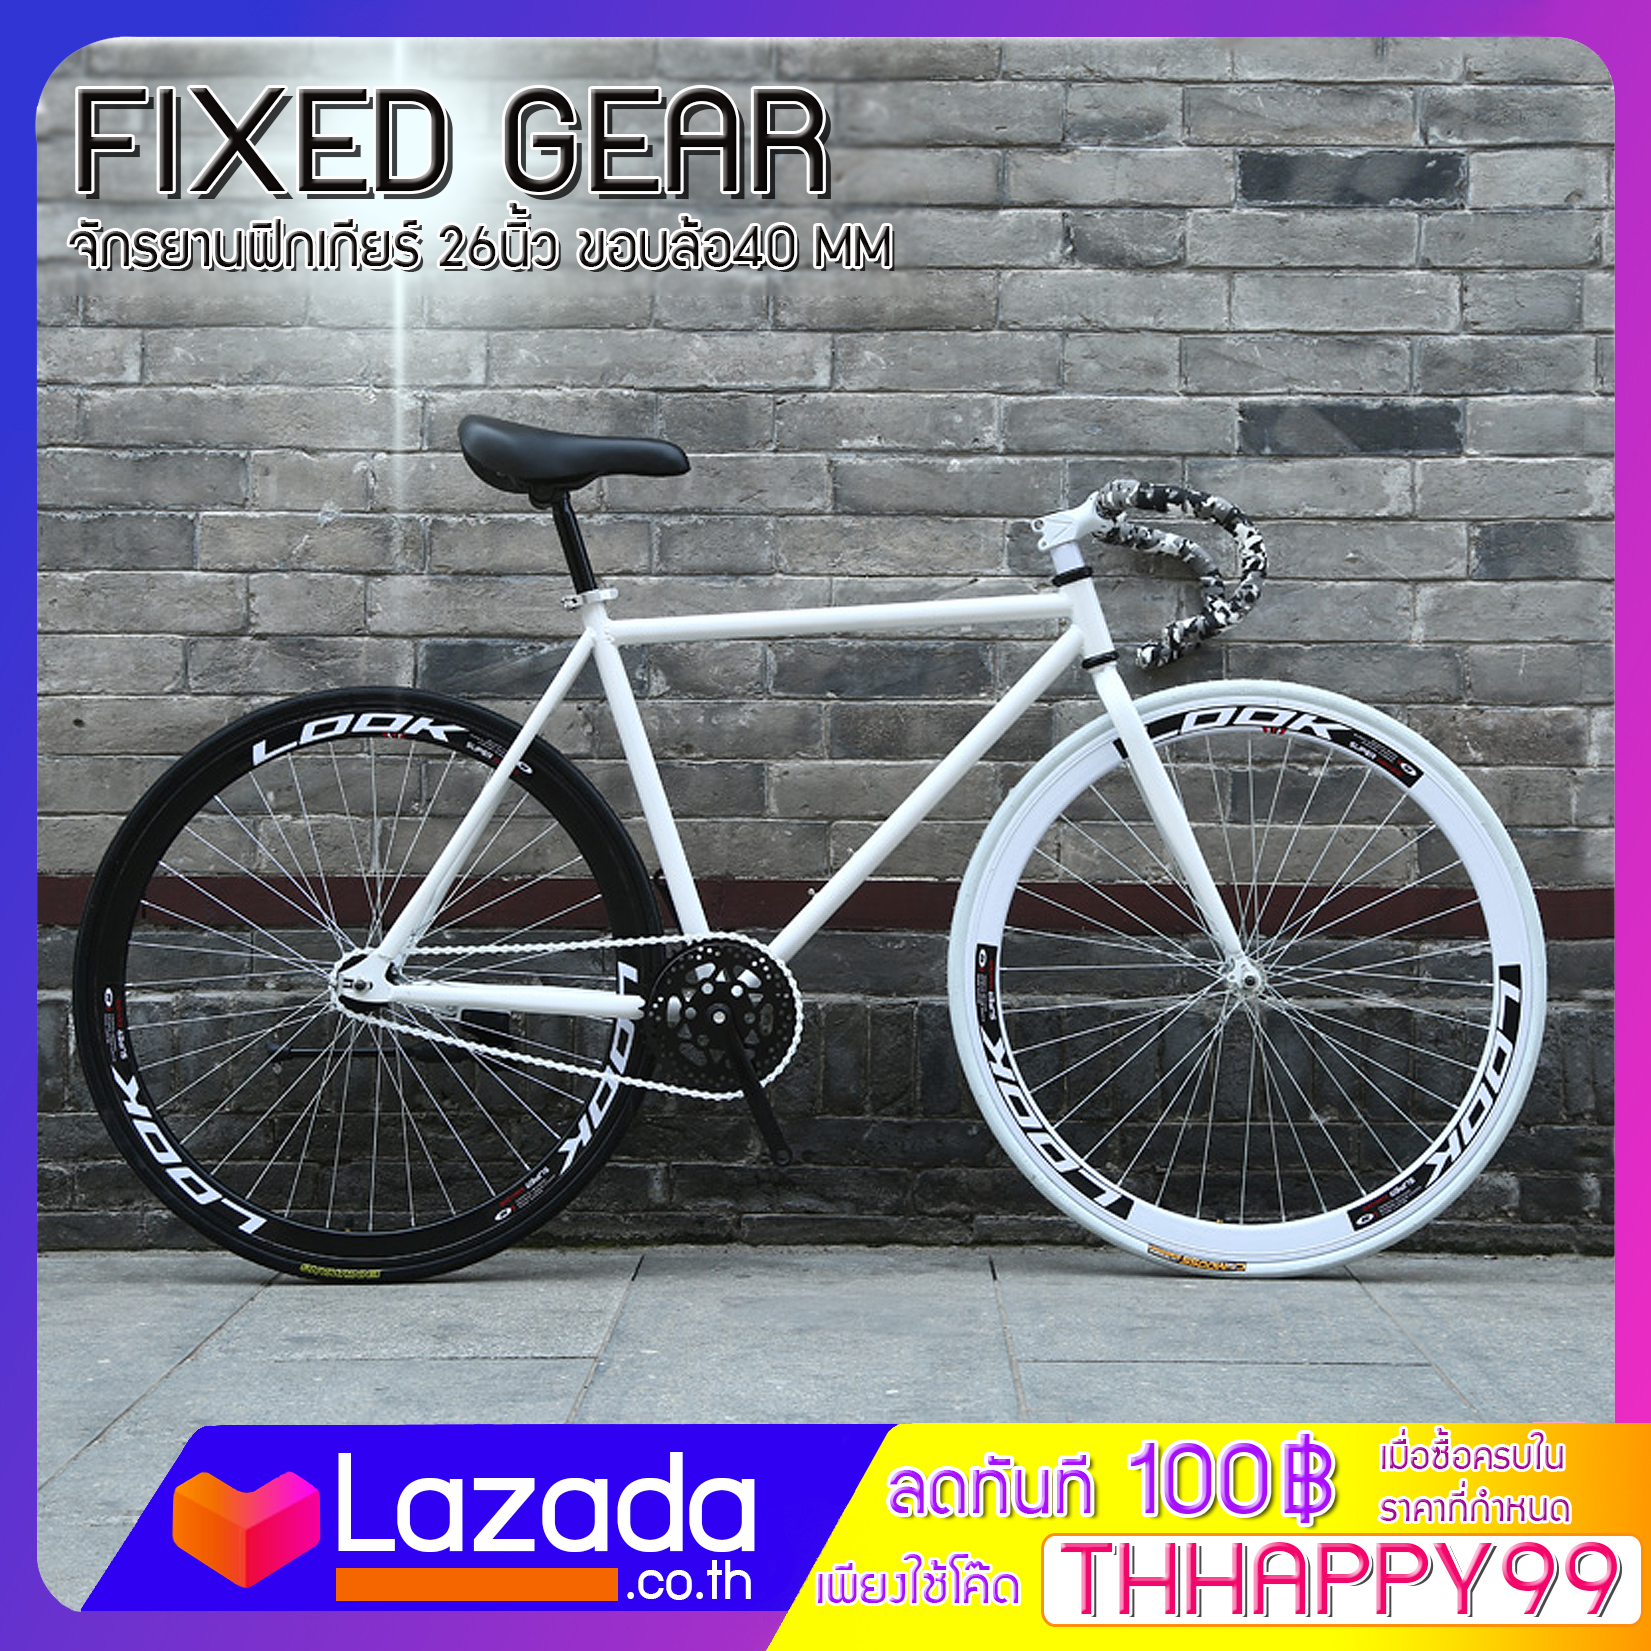 FIXED GEAR จักรยานฟิกเกียร์ เสือหมอบ ขนาดเฟรม 49-52 cm ล้อ 26 นิ้ว ขอบ 40 มิล เฟรมเหล็ก ขนาดยาง 700x23c